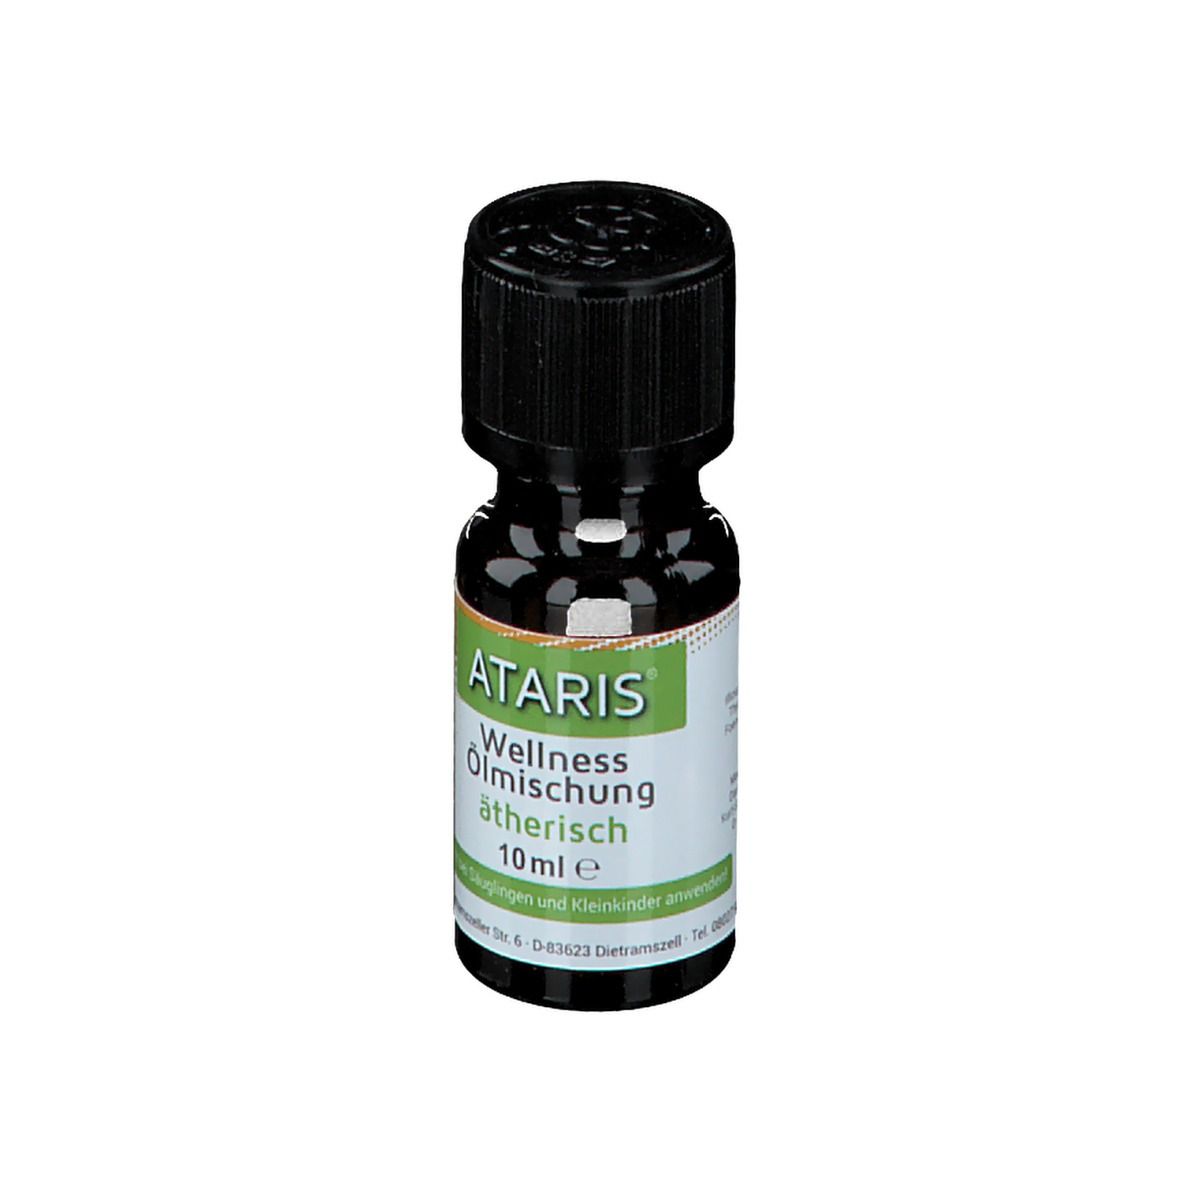 ATARIS® Wellness Ölmischung ätherisch